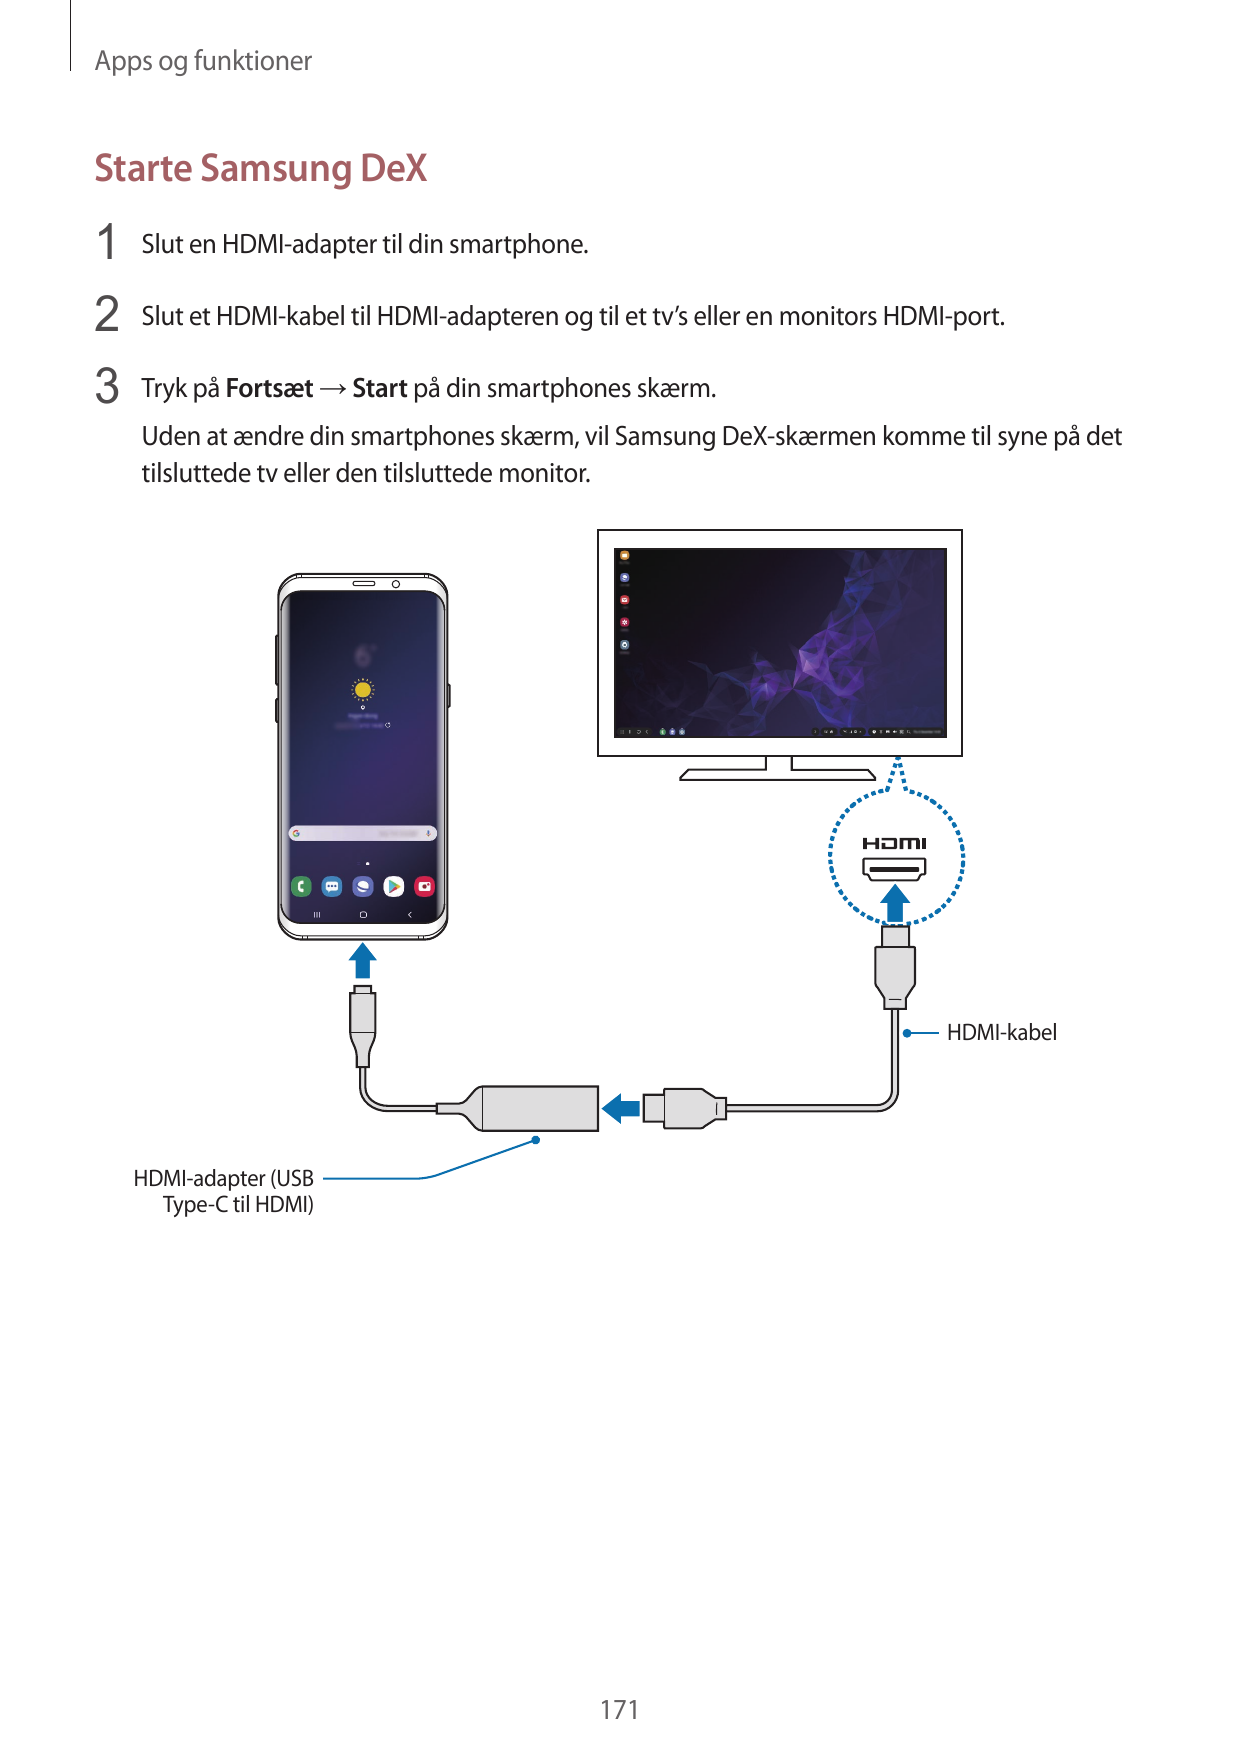 Apps og funktionerStarte Samsung DeX1 Slut en HDMI-adapter til din smartphone.2 Slut et HDMI-kabel til HDMI-adapteren og til et 